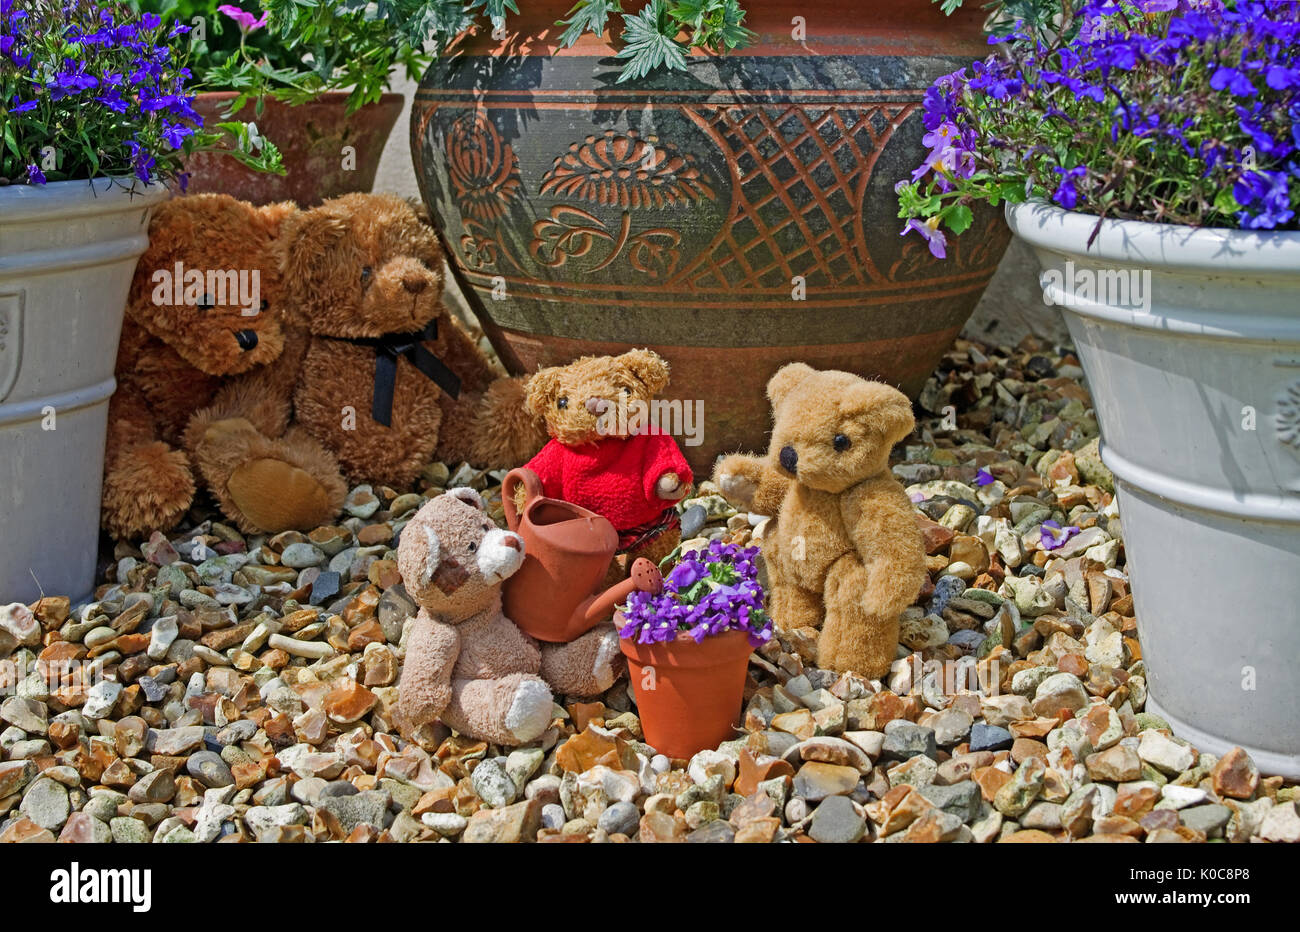 Giardino tableau di 3 piccoli bodies abbeveraggio un mini vaso di fiori con argilla mini annaffiatoio, osservata in background da 2 grandi orsi pelosi. Foto Stock